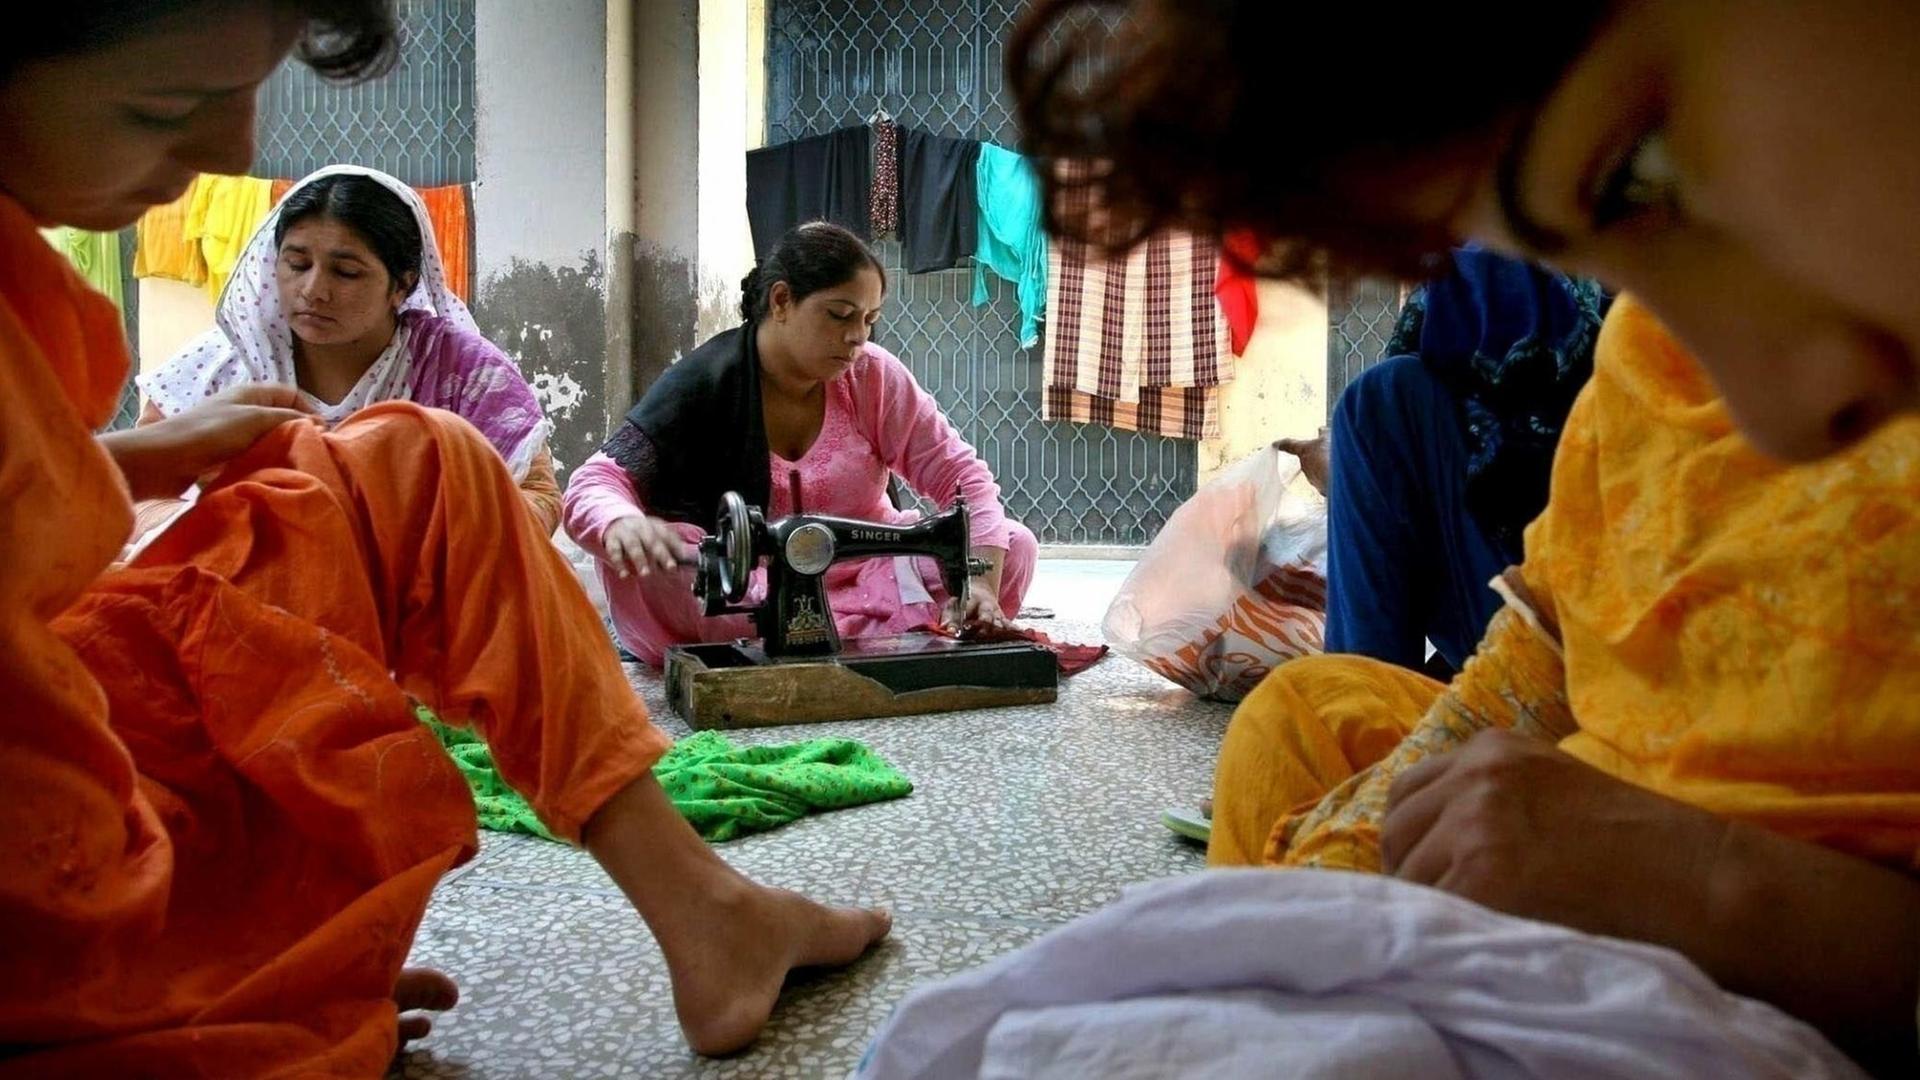 Frauen sitzen in einem Raum, in dem sie vor Männergewalt in Pakistan geschützt werden sollen